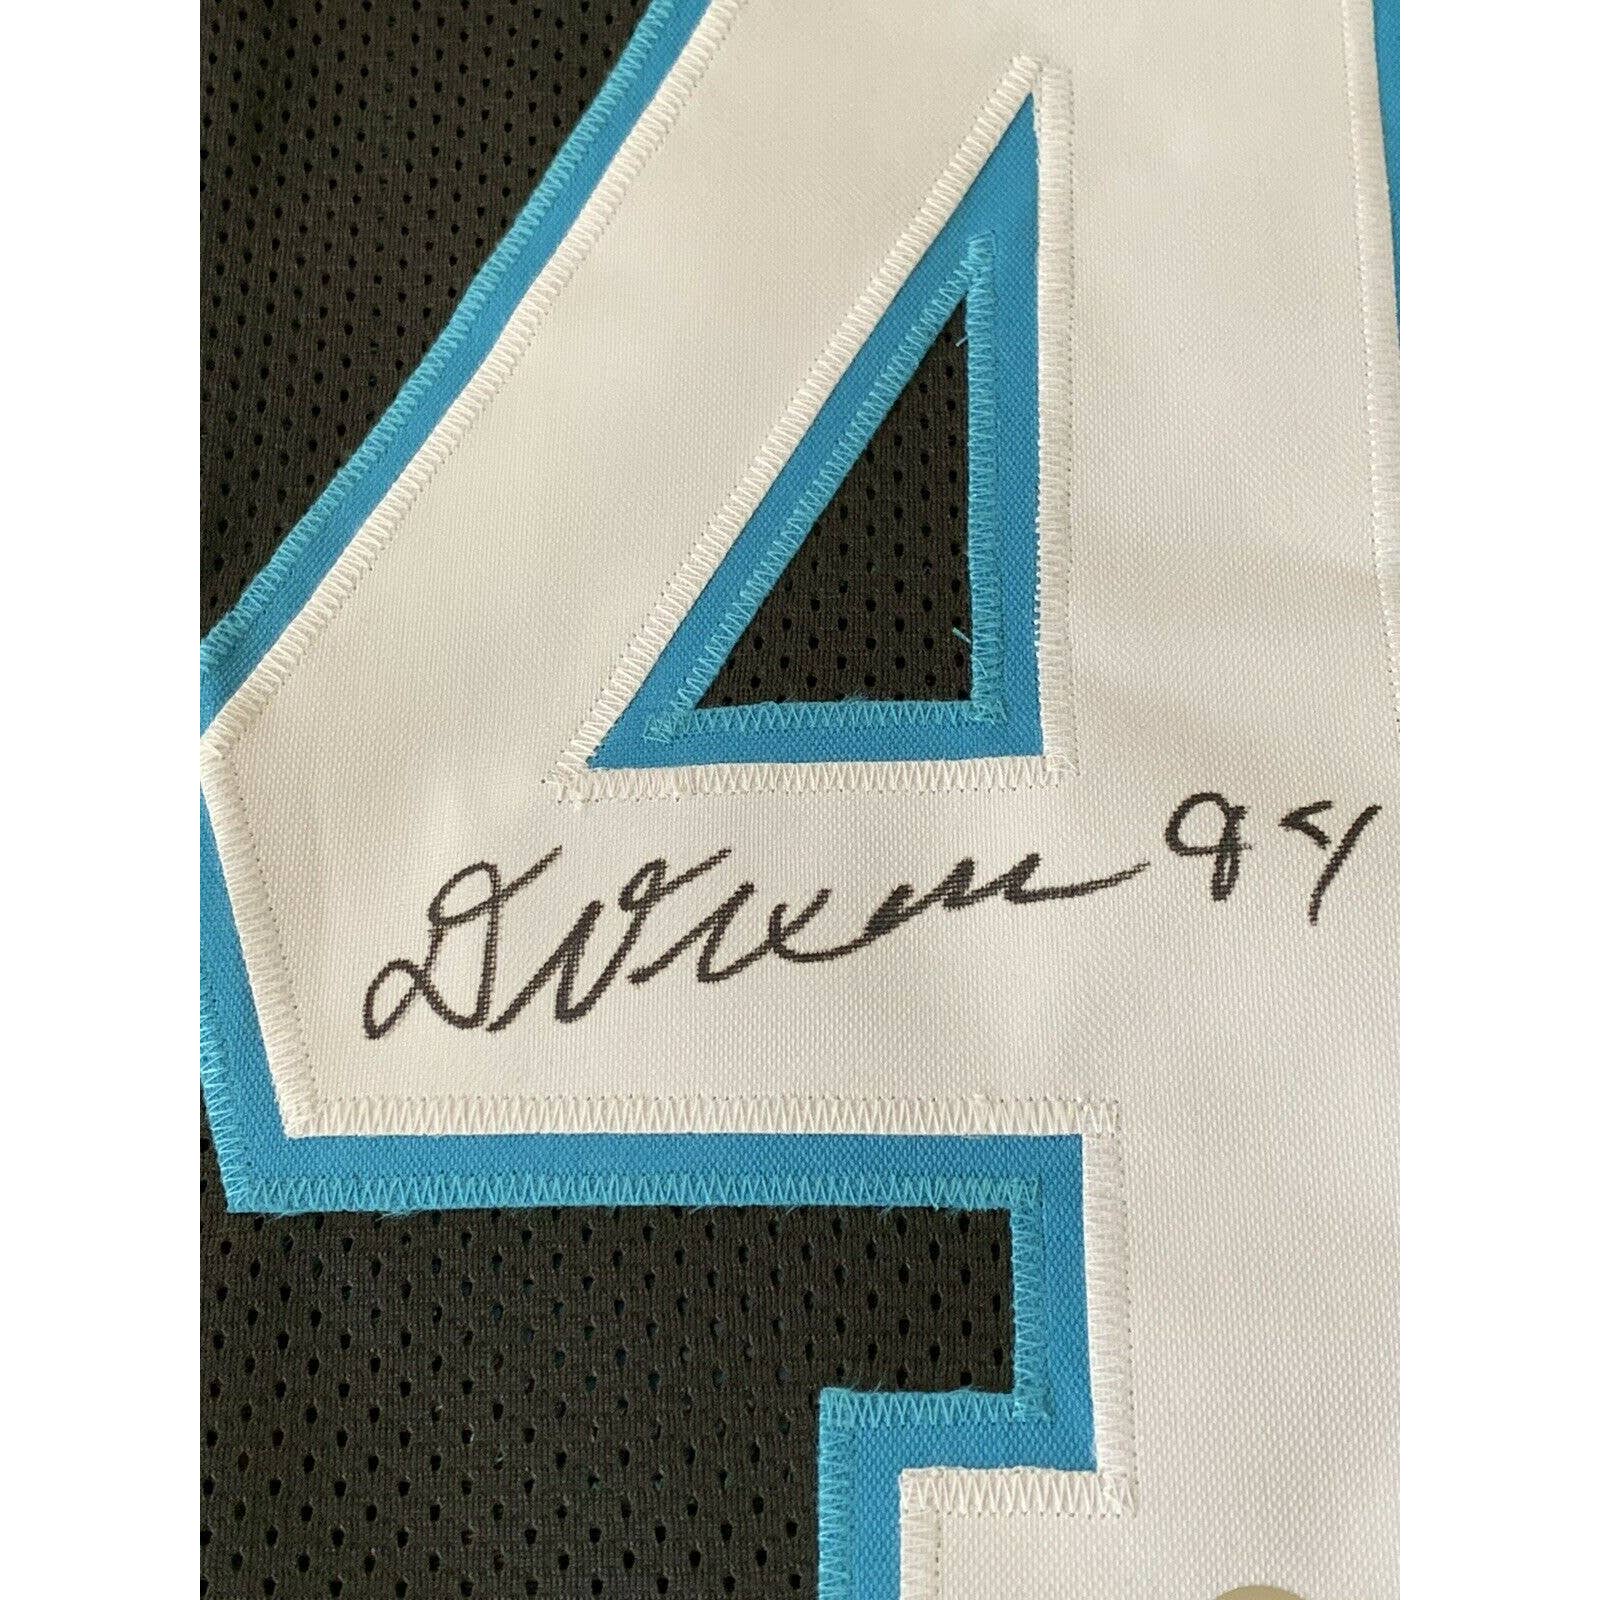 Daviyon Nixon Autographed/Signed Jersey Beckett Sticker Carolina Panthers - TreasuresEvolved